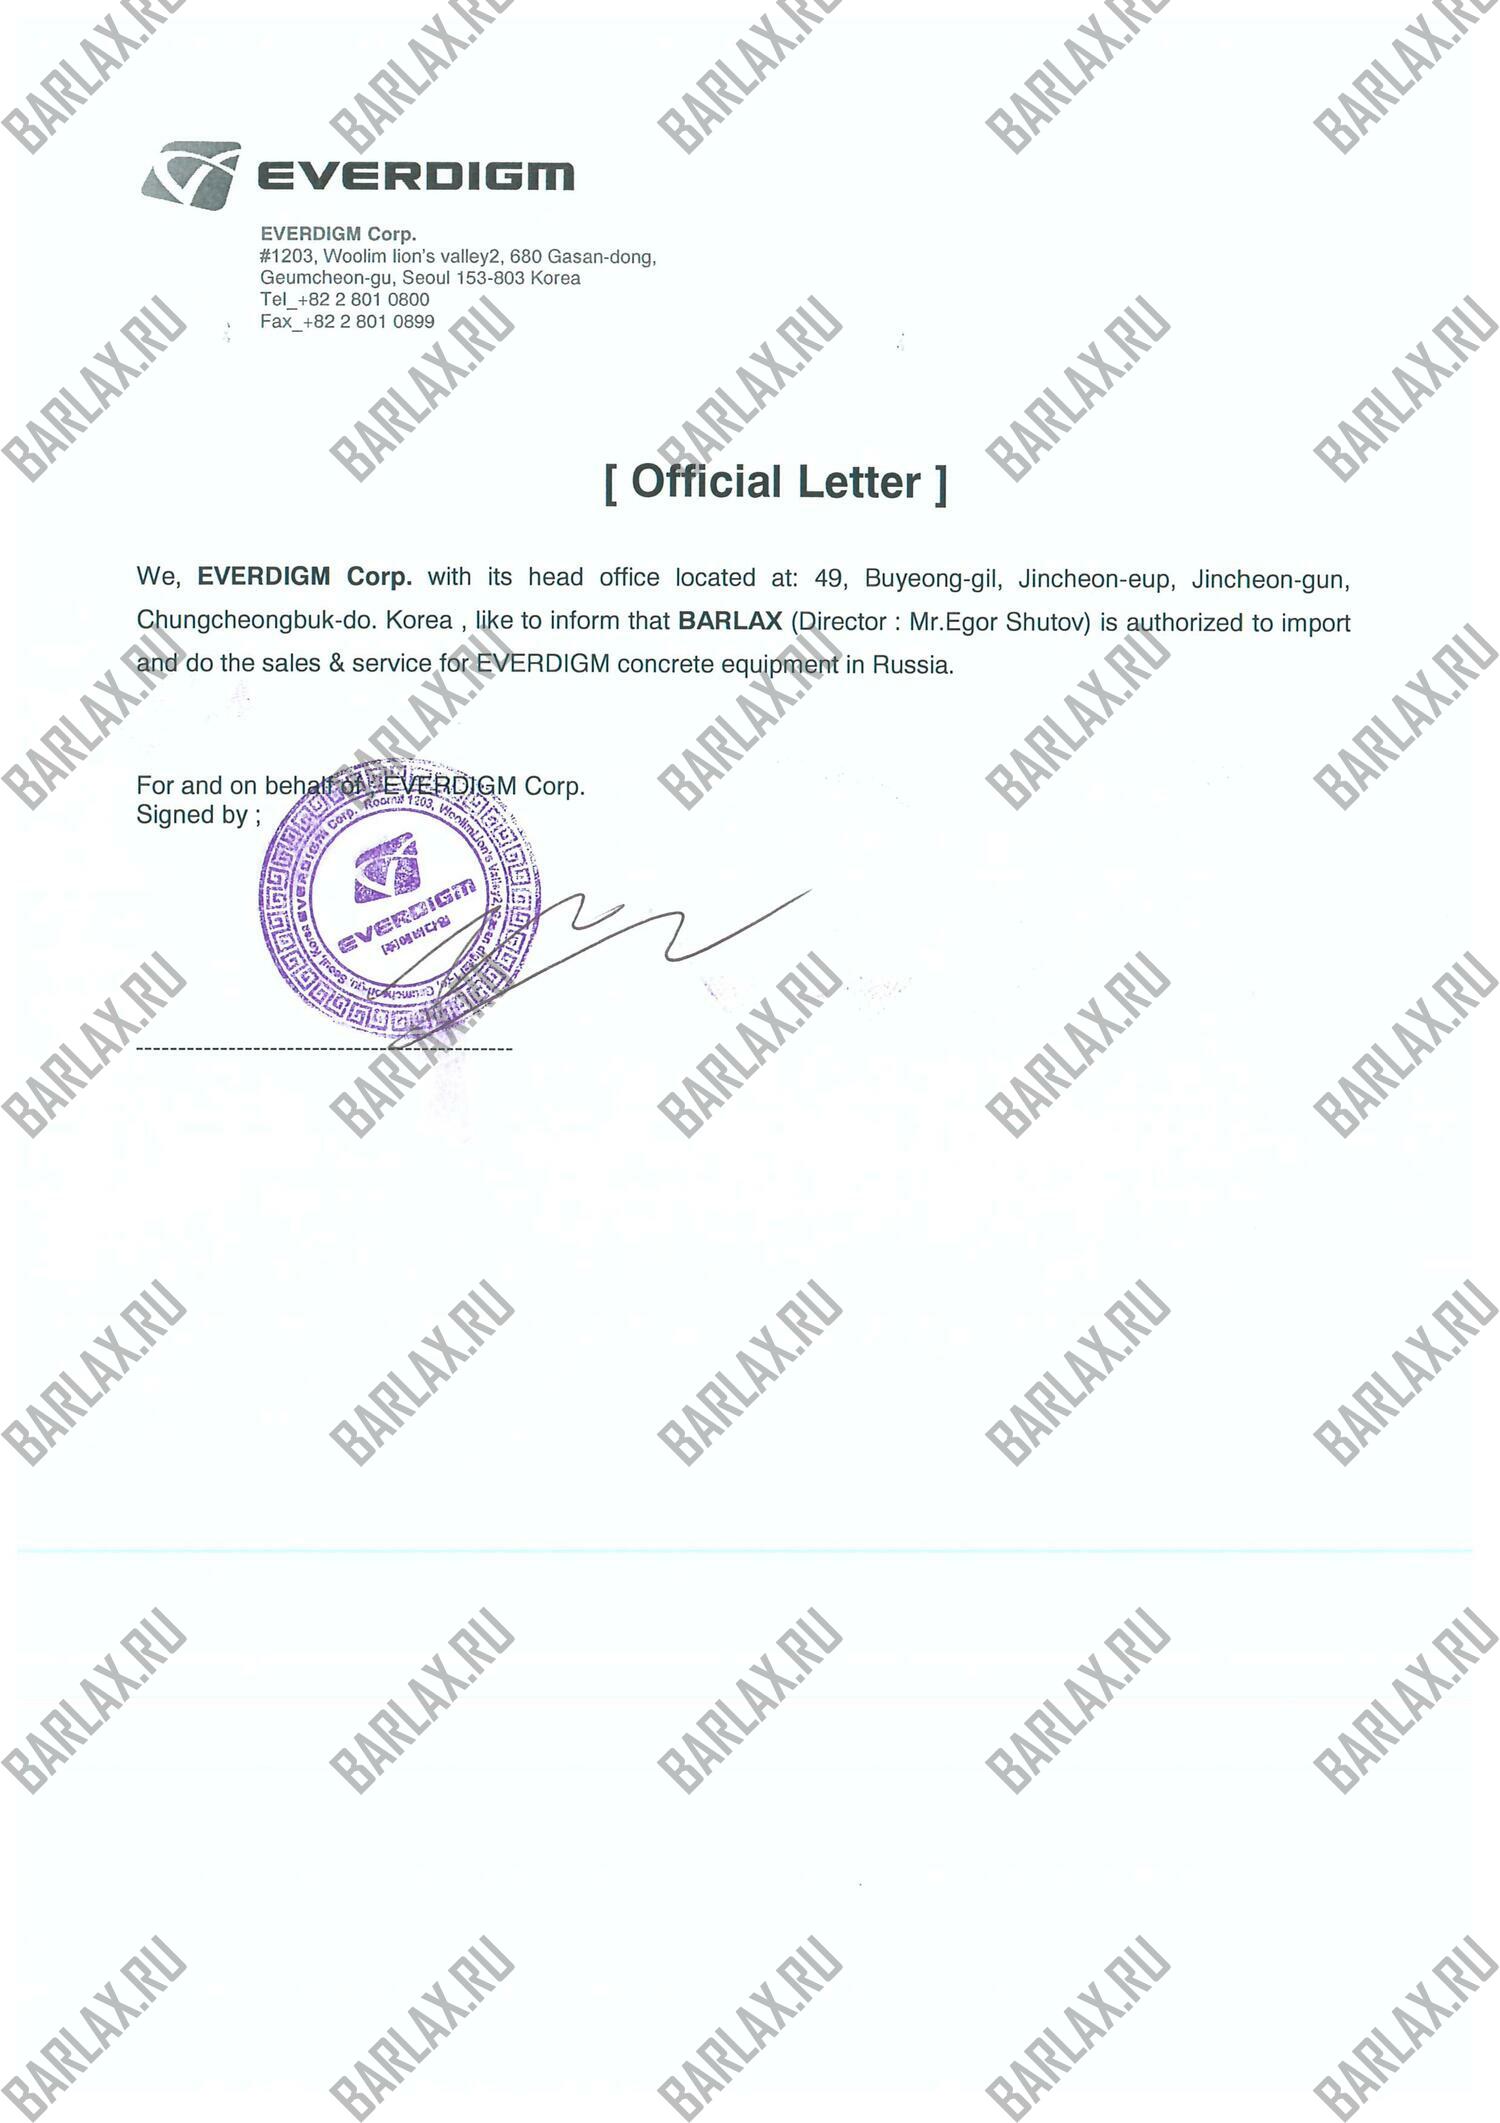 Сертификат дилерства HYUNDAI EVERDIGM - Южная Корея 